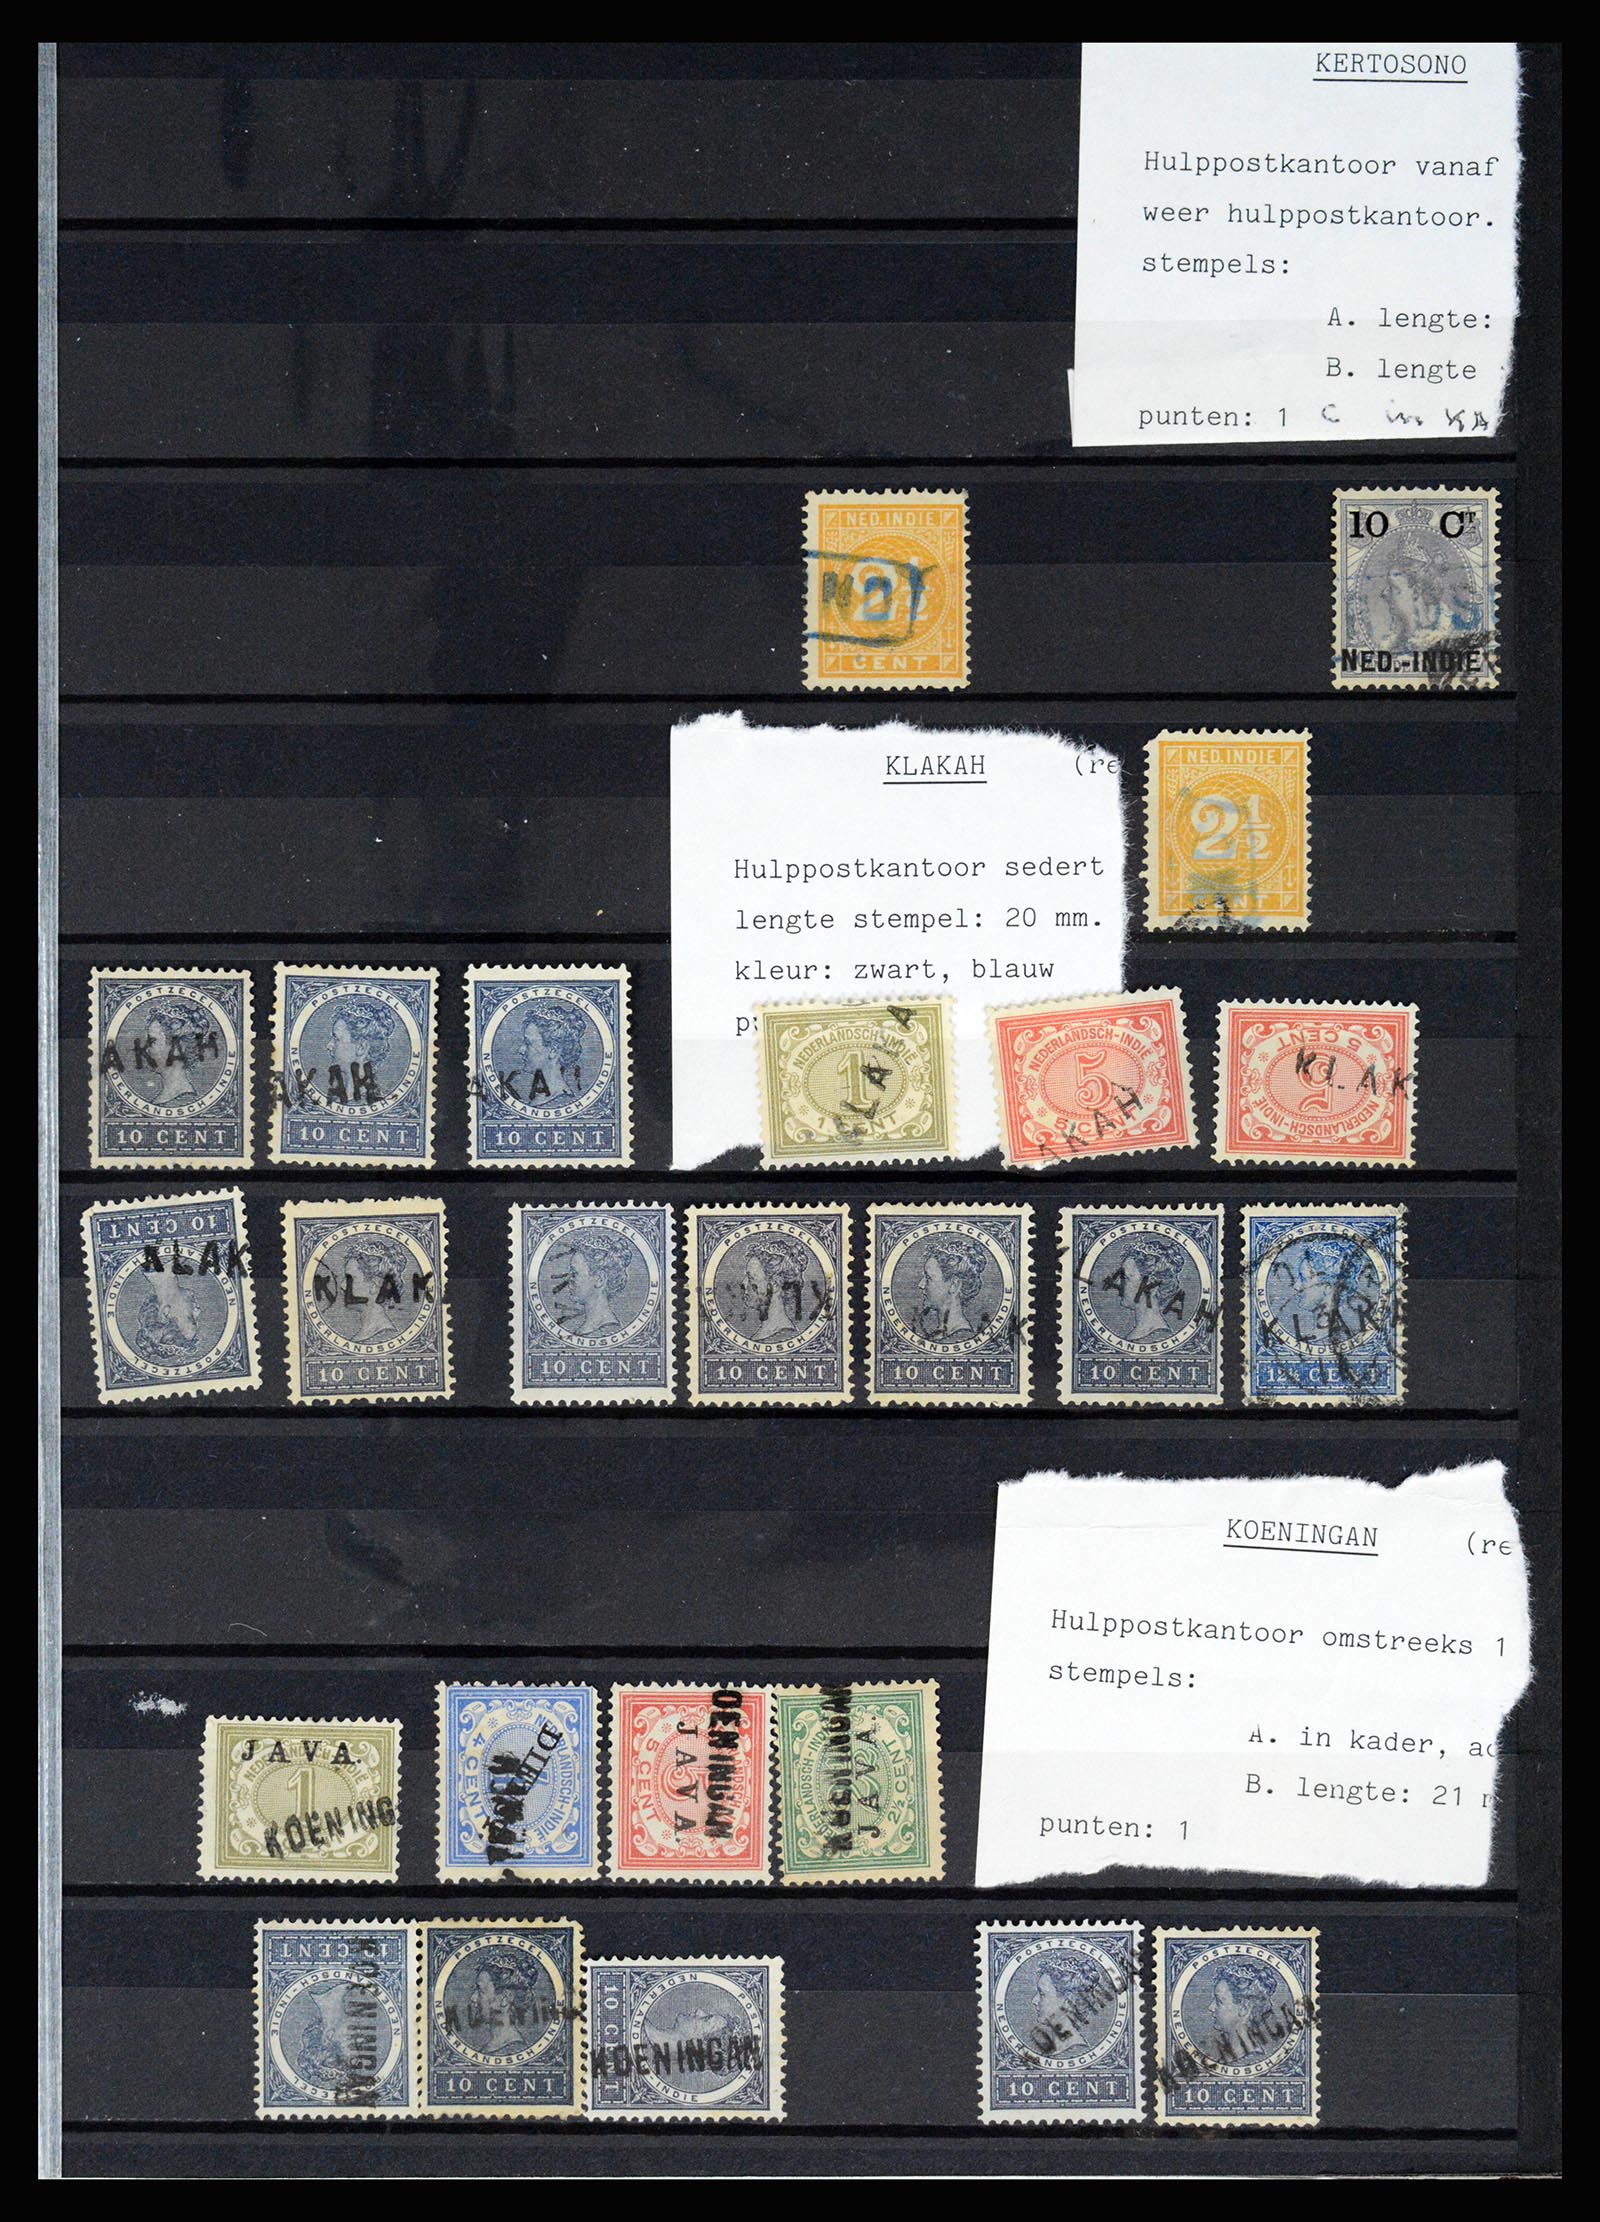 36512 033 - Stamp collection 36512 Nederlands Indië stempels 1872-1930.